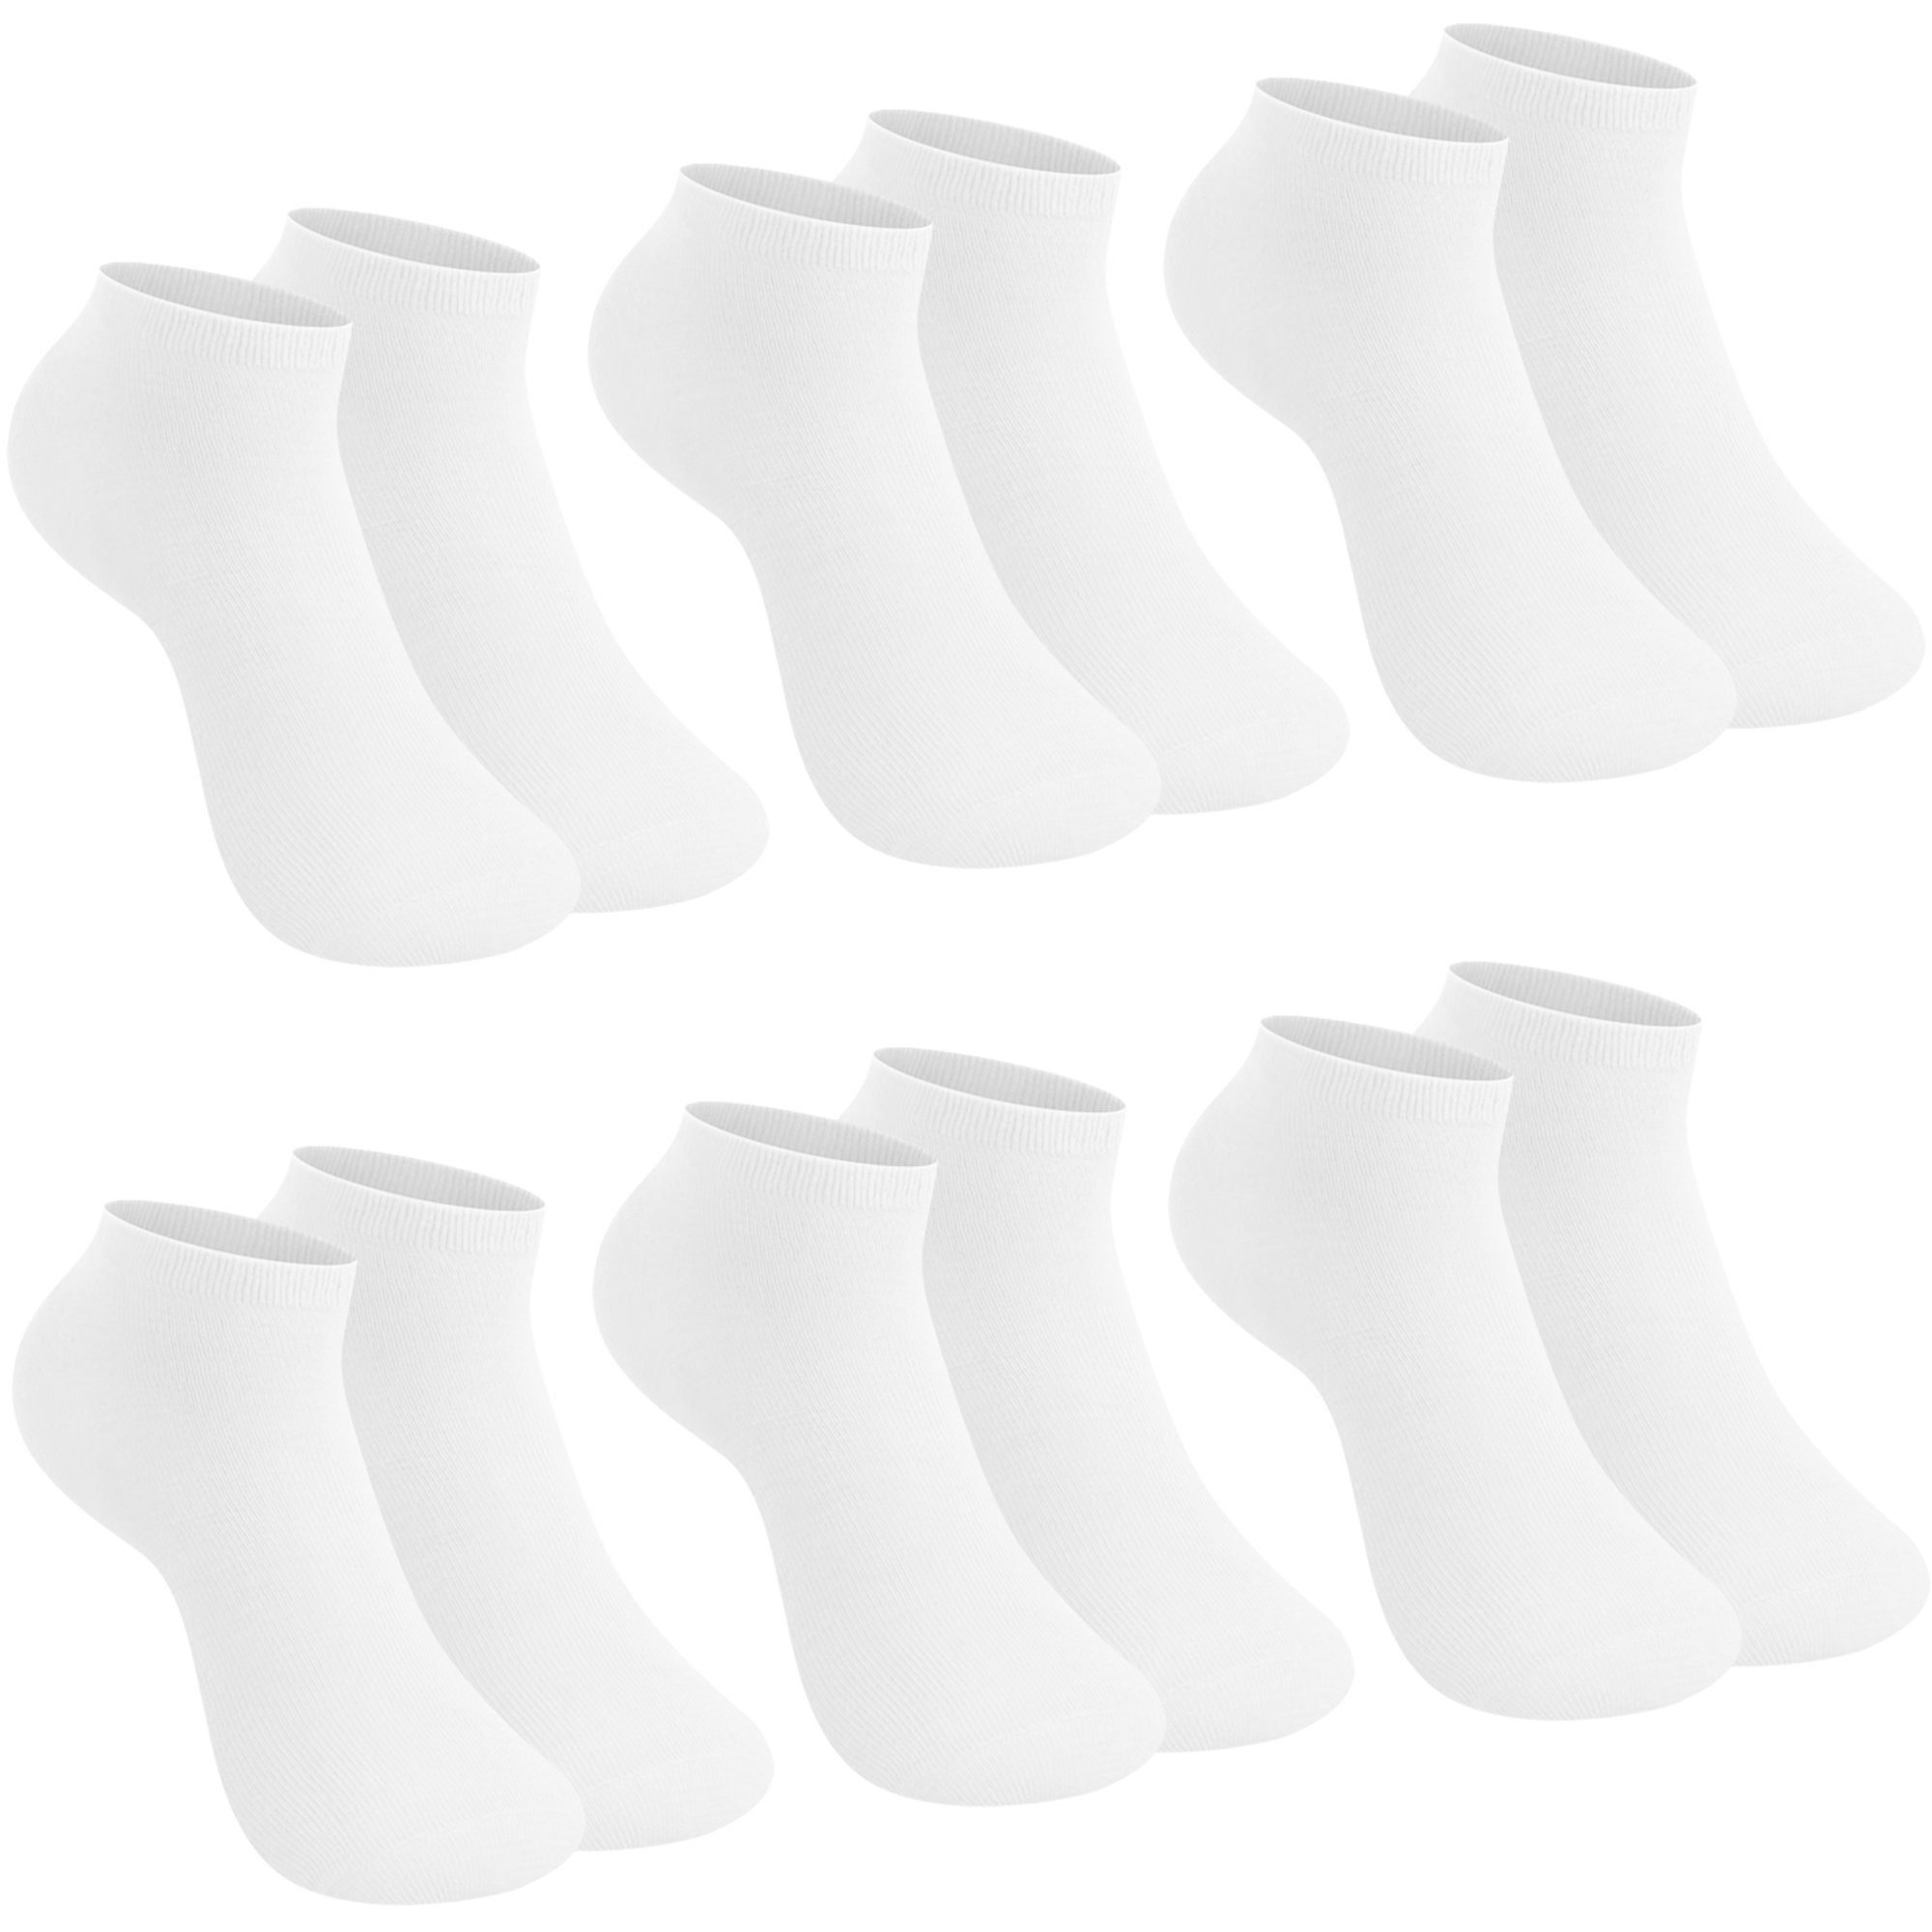 Sneakersocken Paar Socken Sneaker Farbe 10/12er uni (12-Paar, 10/12 Pack) 2301 Weiß Libella